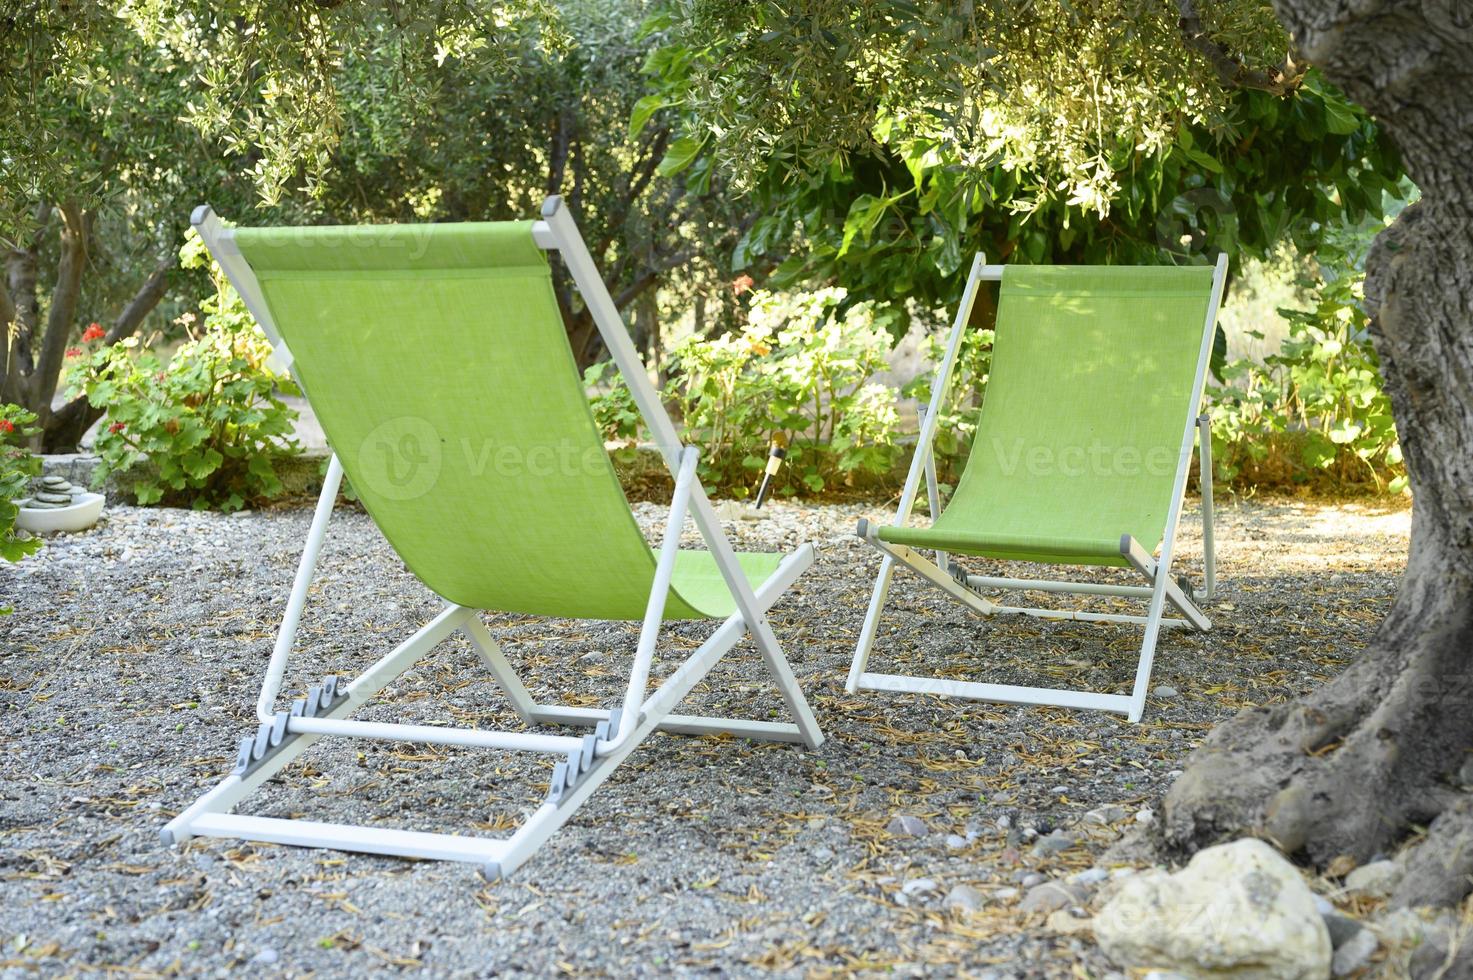 twee lege strandstoelen in de schaduw van olijfbomen in de achtertuin foto